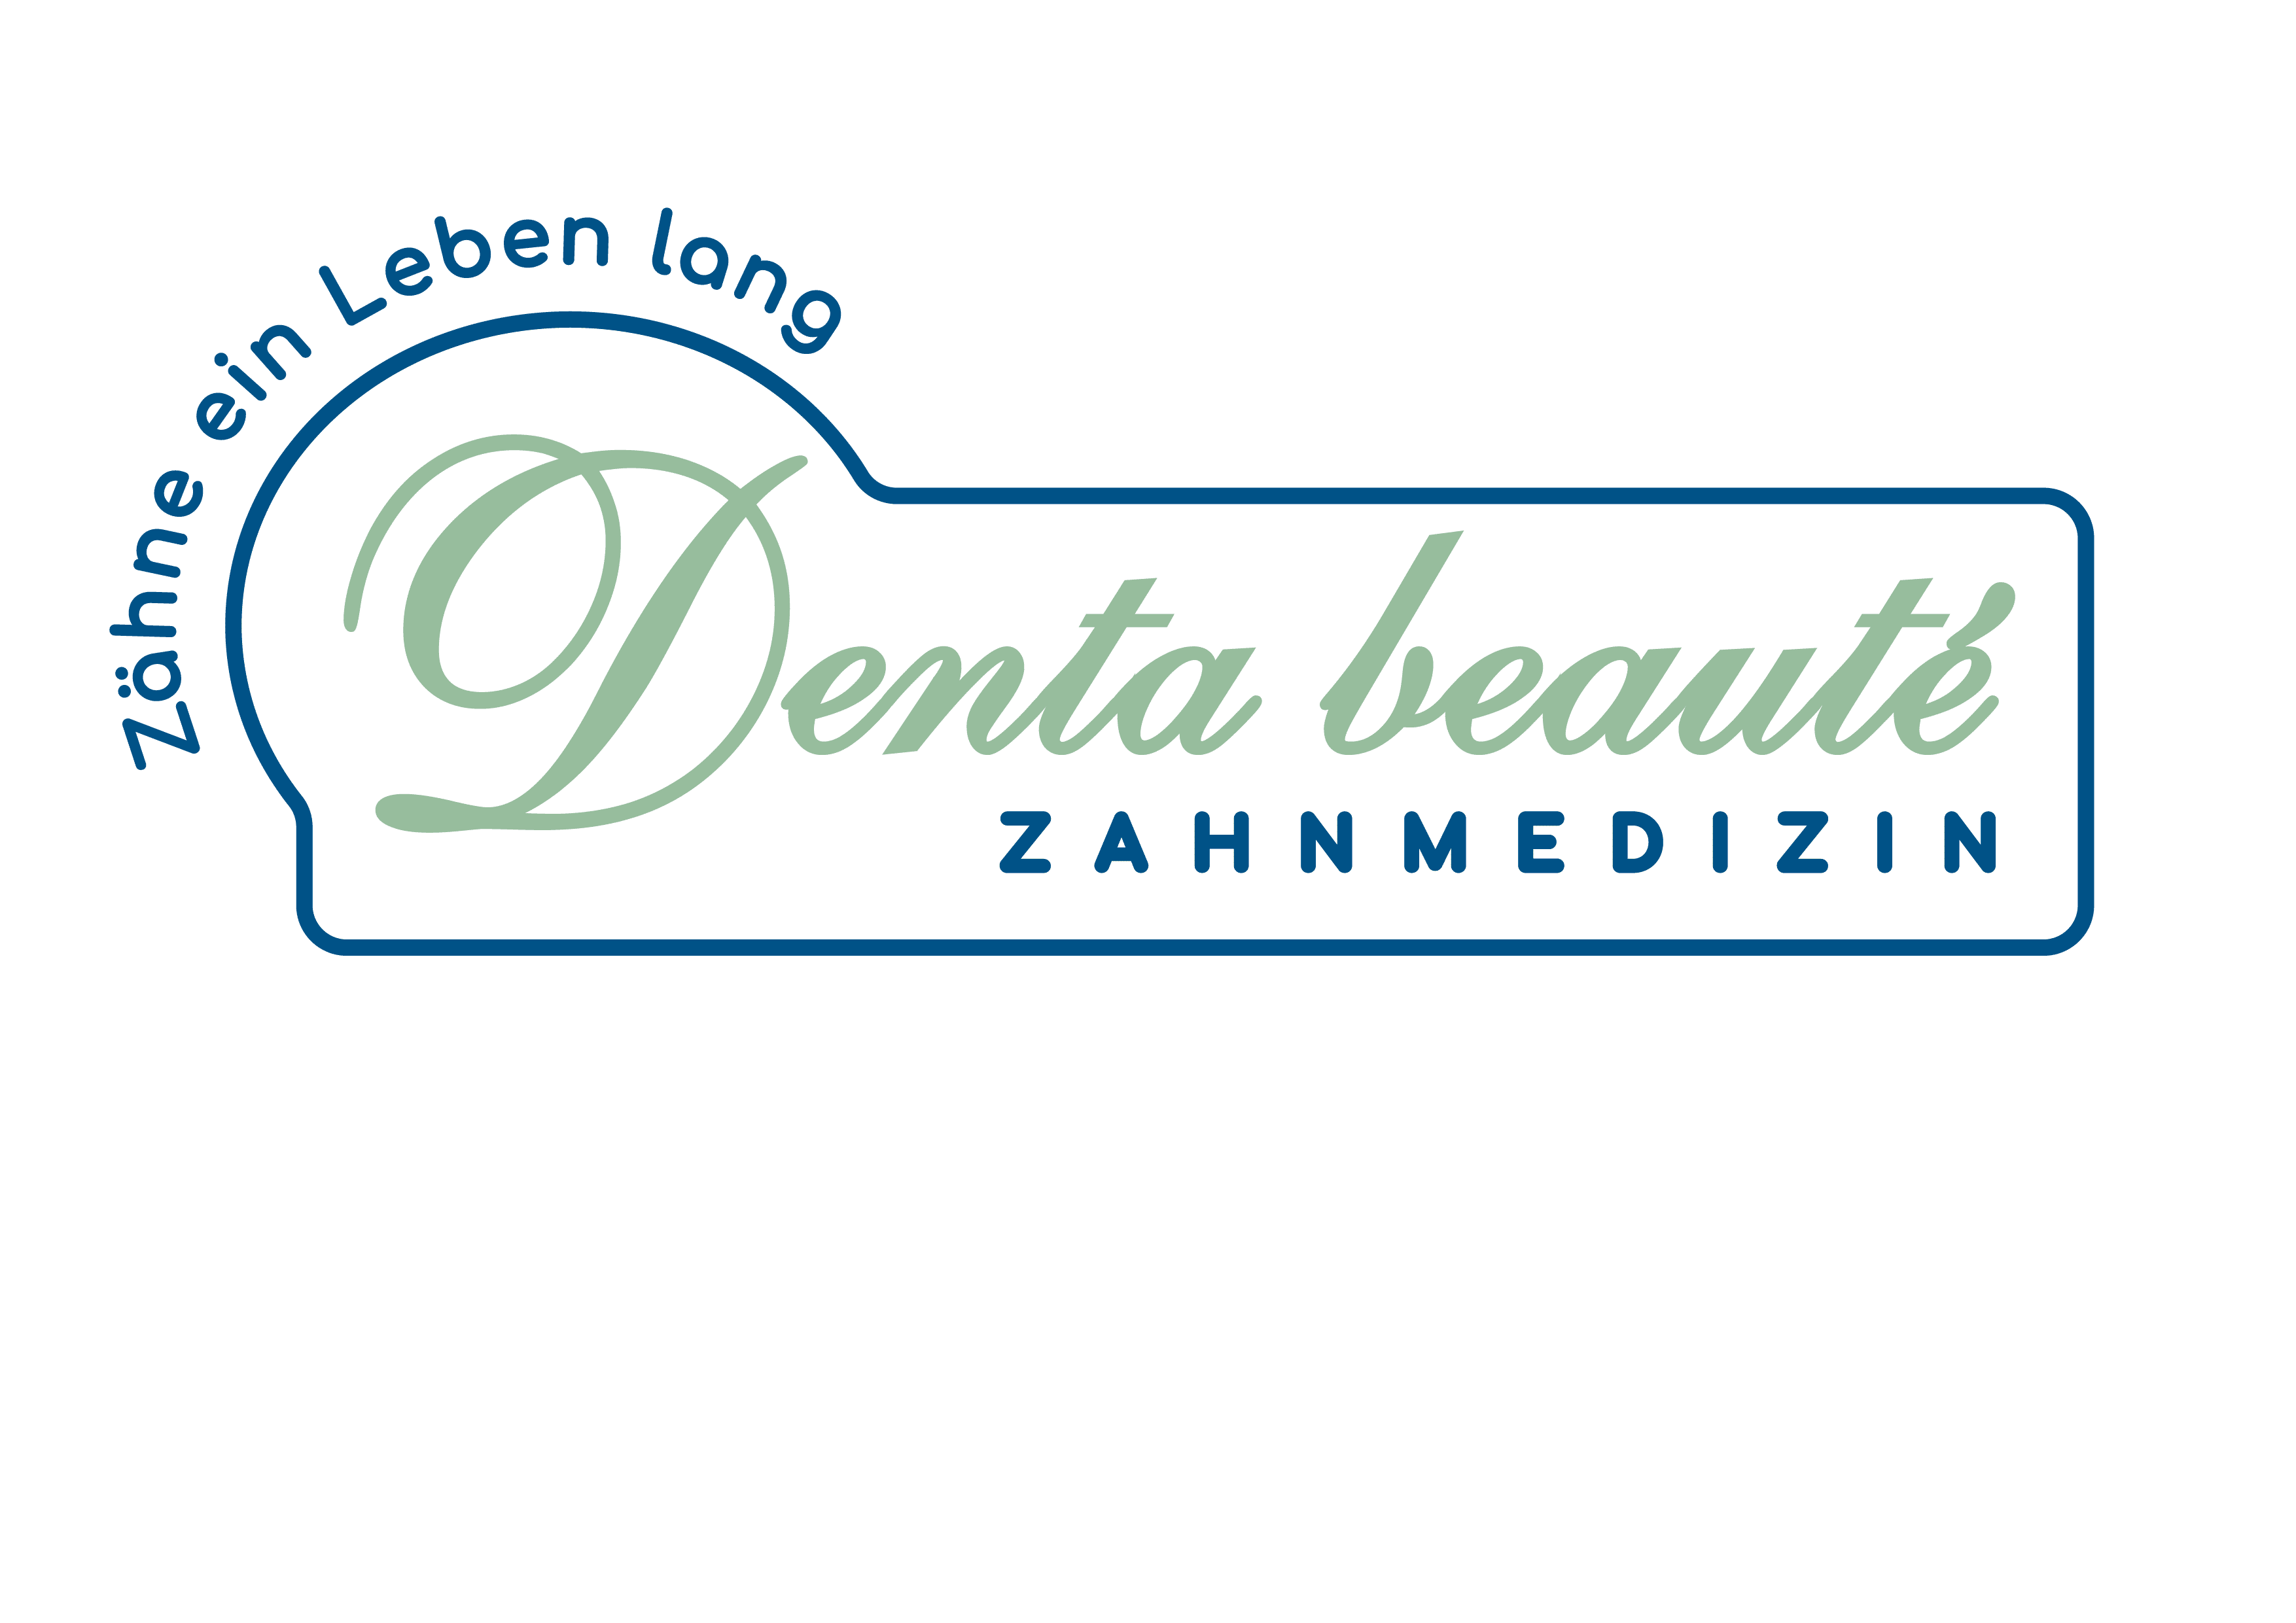 (c) Denta-beaute.com